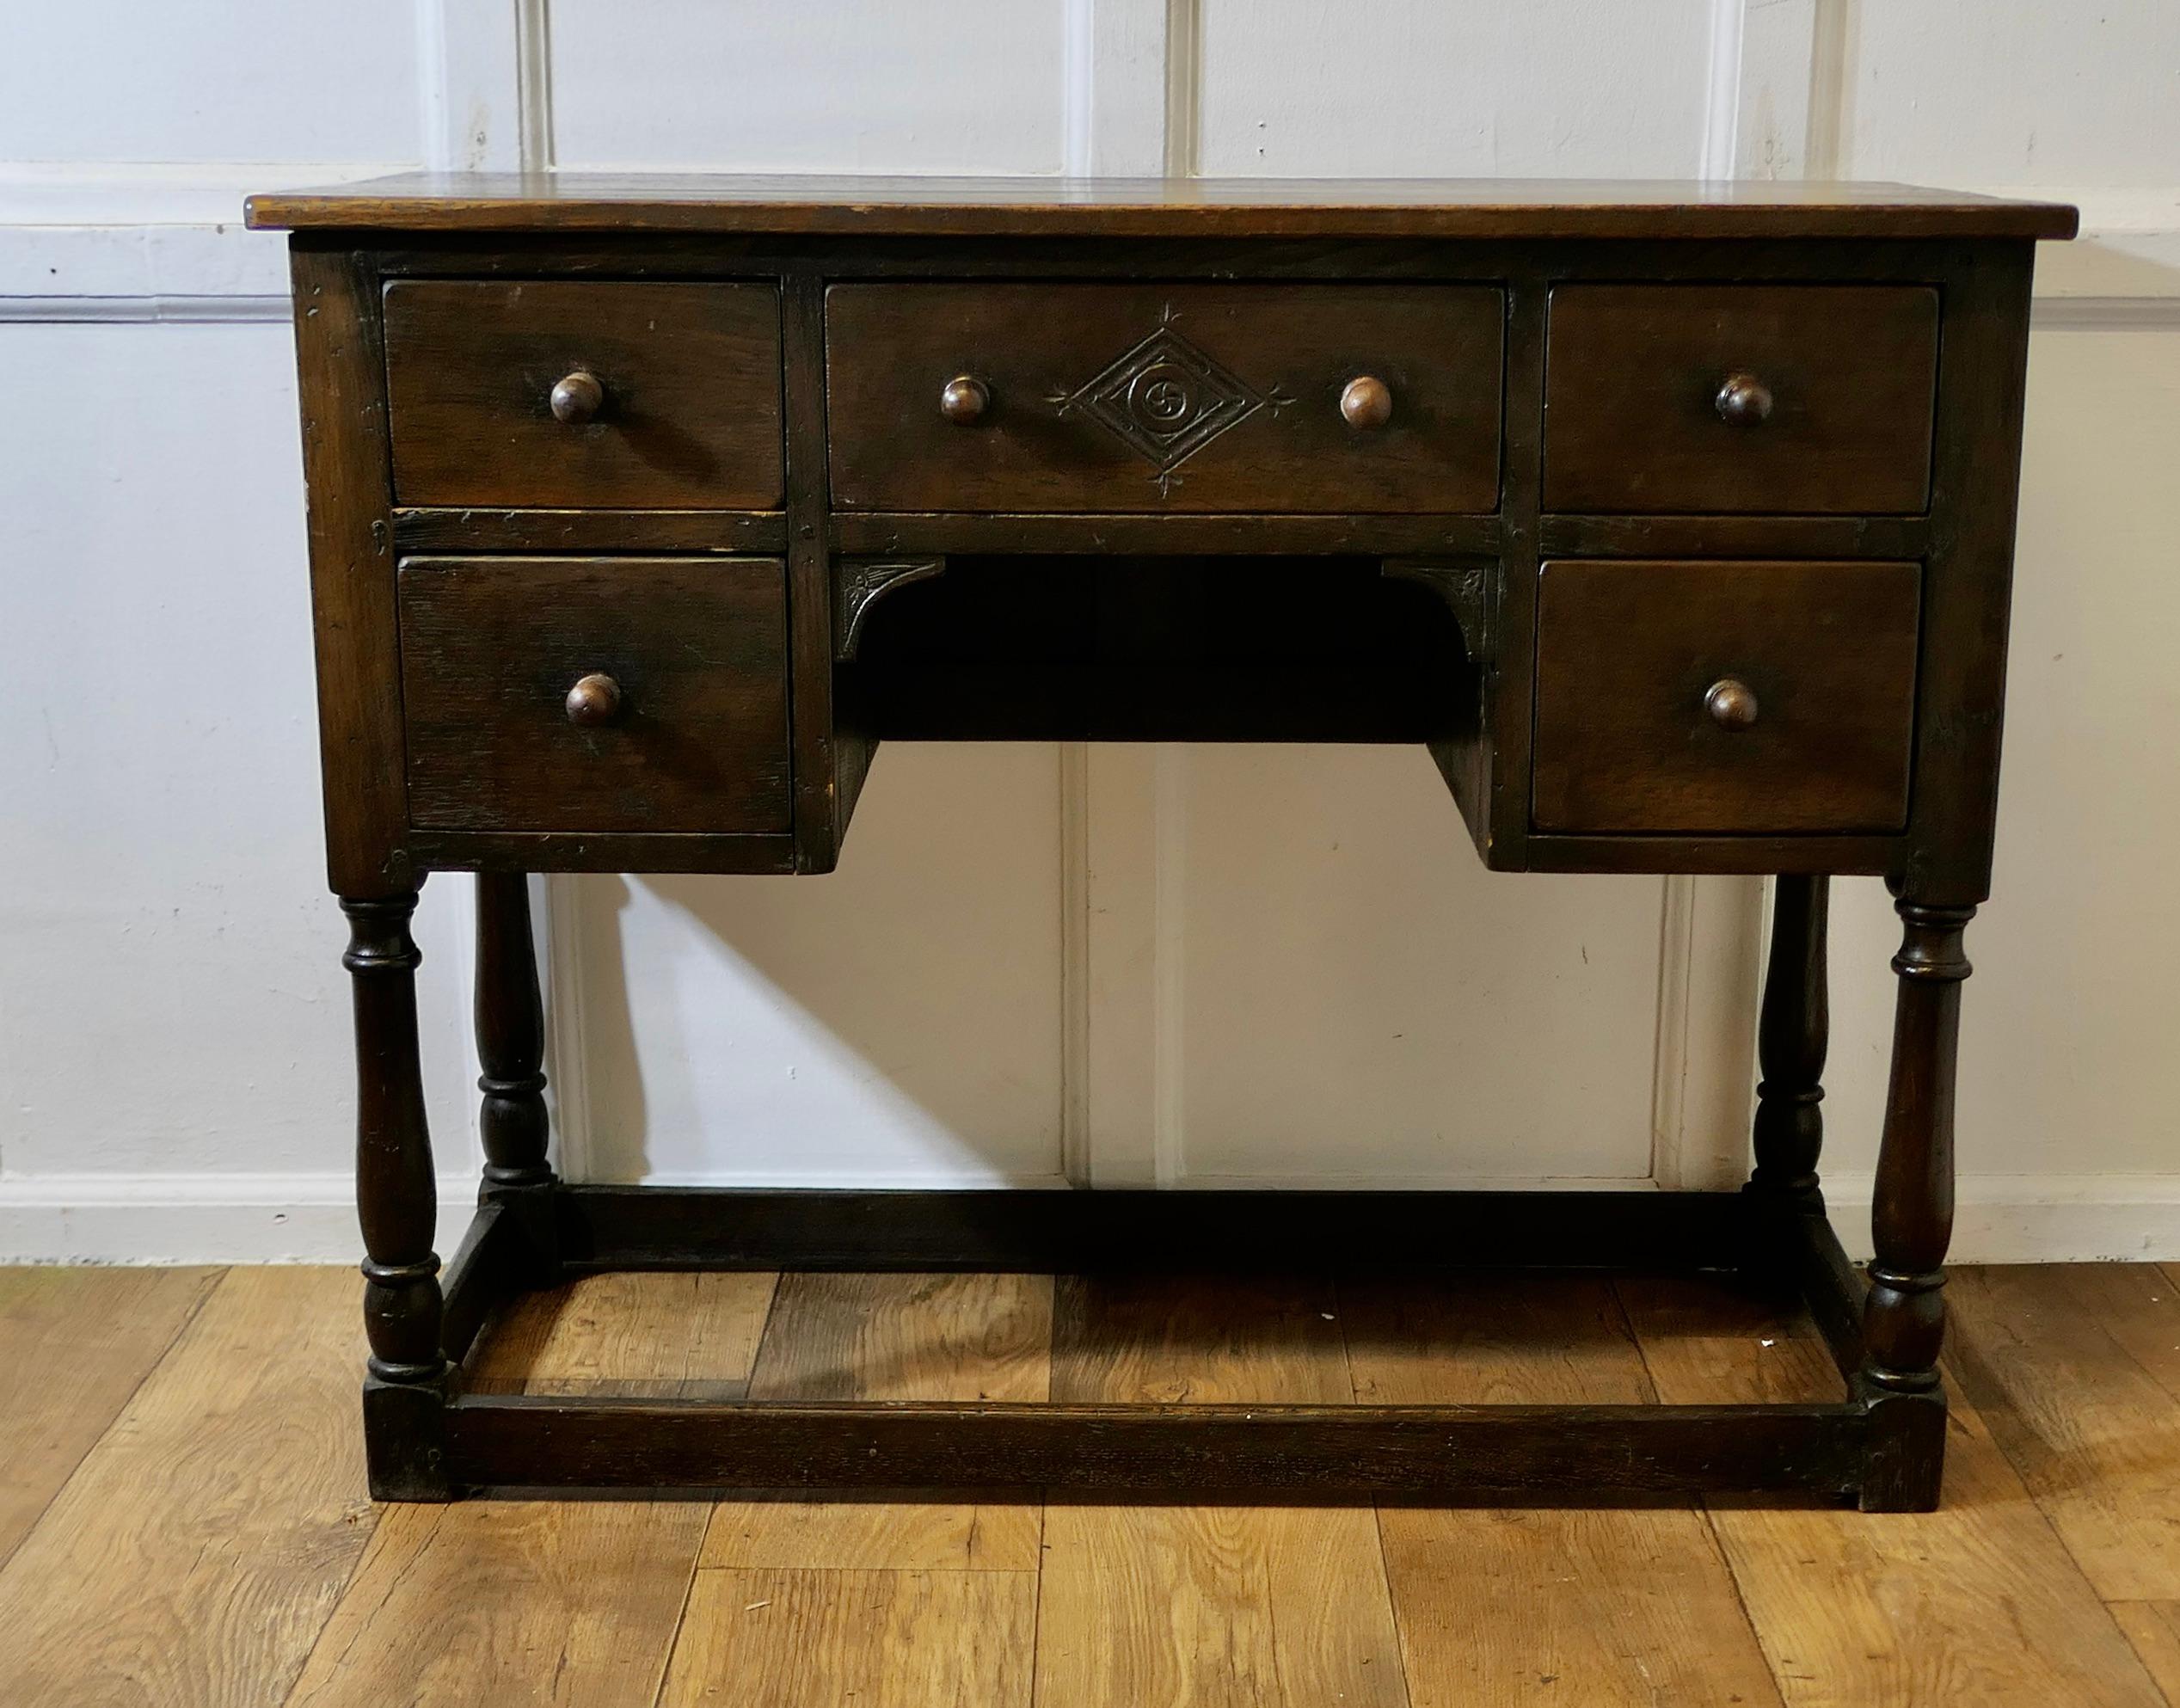 Spätviktorianischer Eichen-Schreibtisch 

Es handelt sich um ein solides Stück von guter Qualität aus der Zeit um 1900, mit niedrigen Bahren und auf gedrechselten Beinen stehend. Der Tisch hat 5 Schubladen, von denen die mittlere eine geometrisch